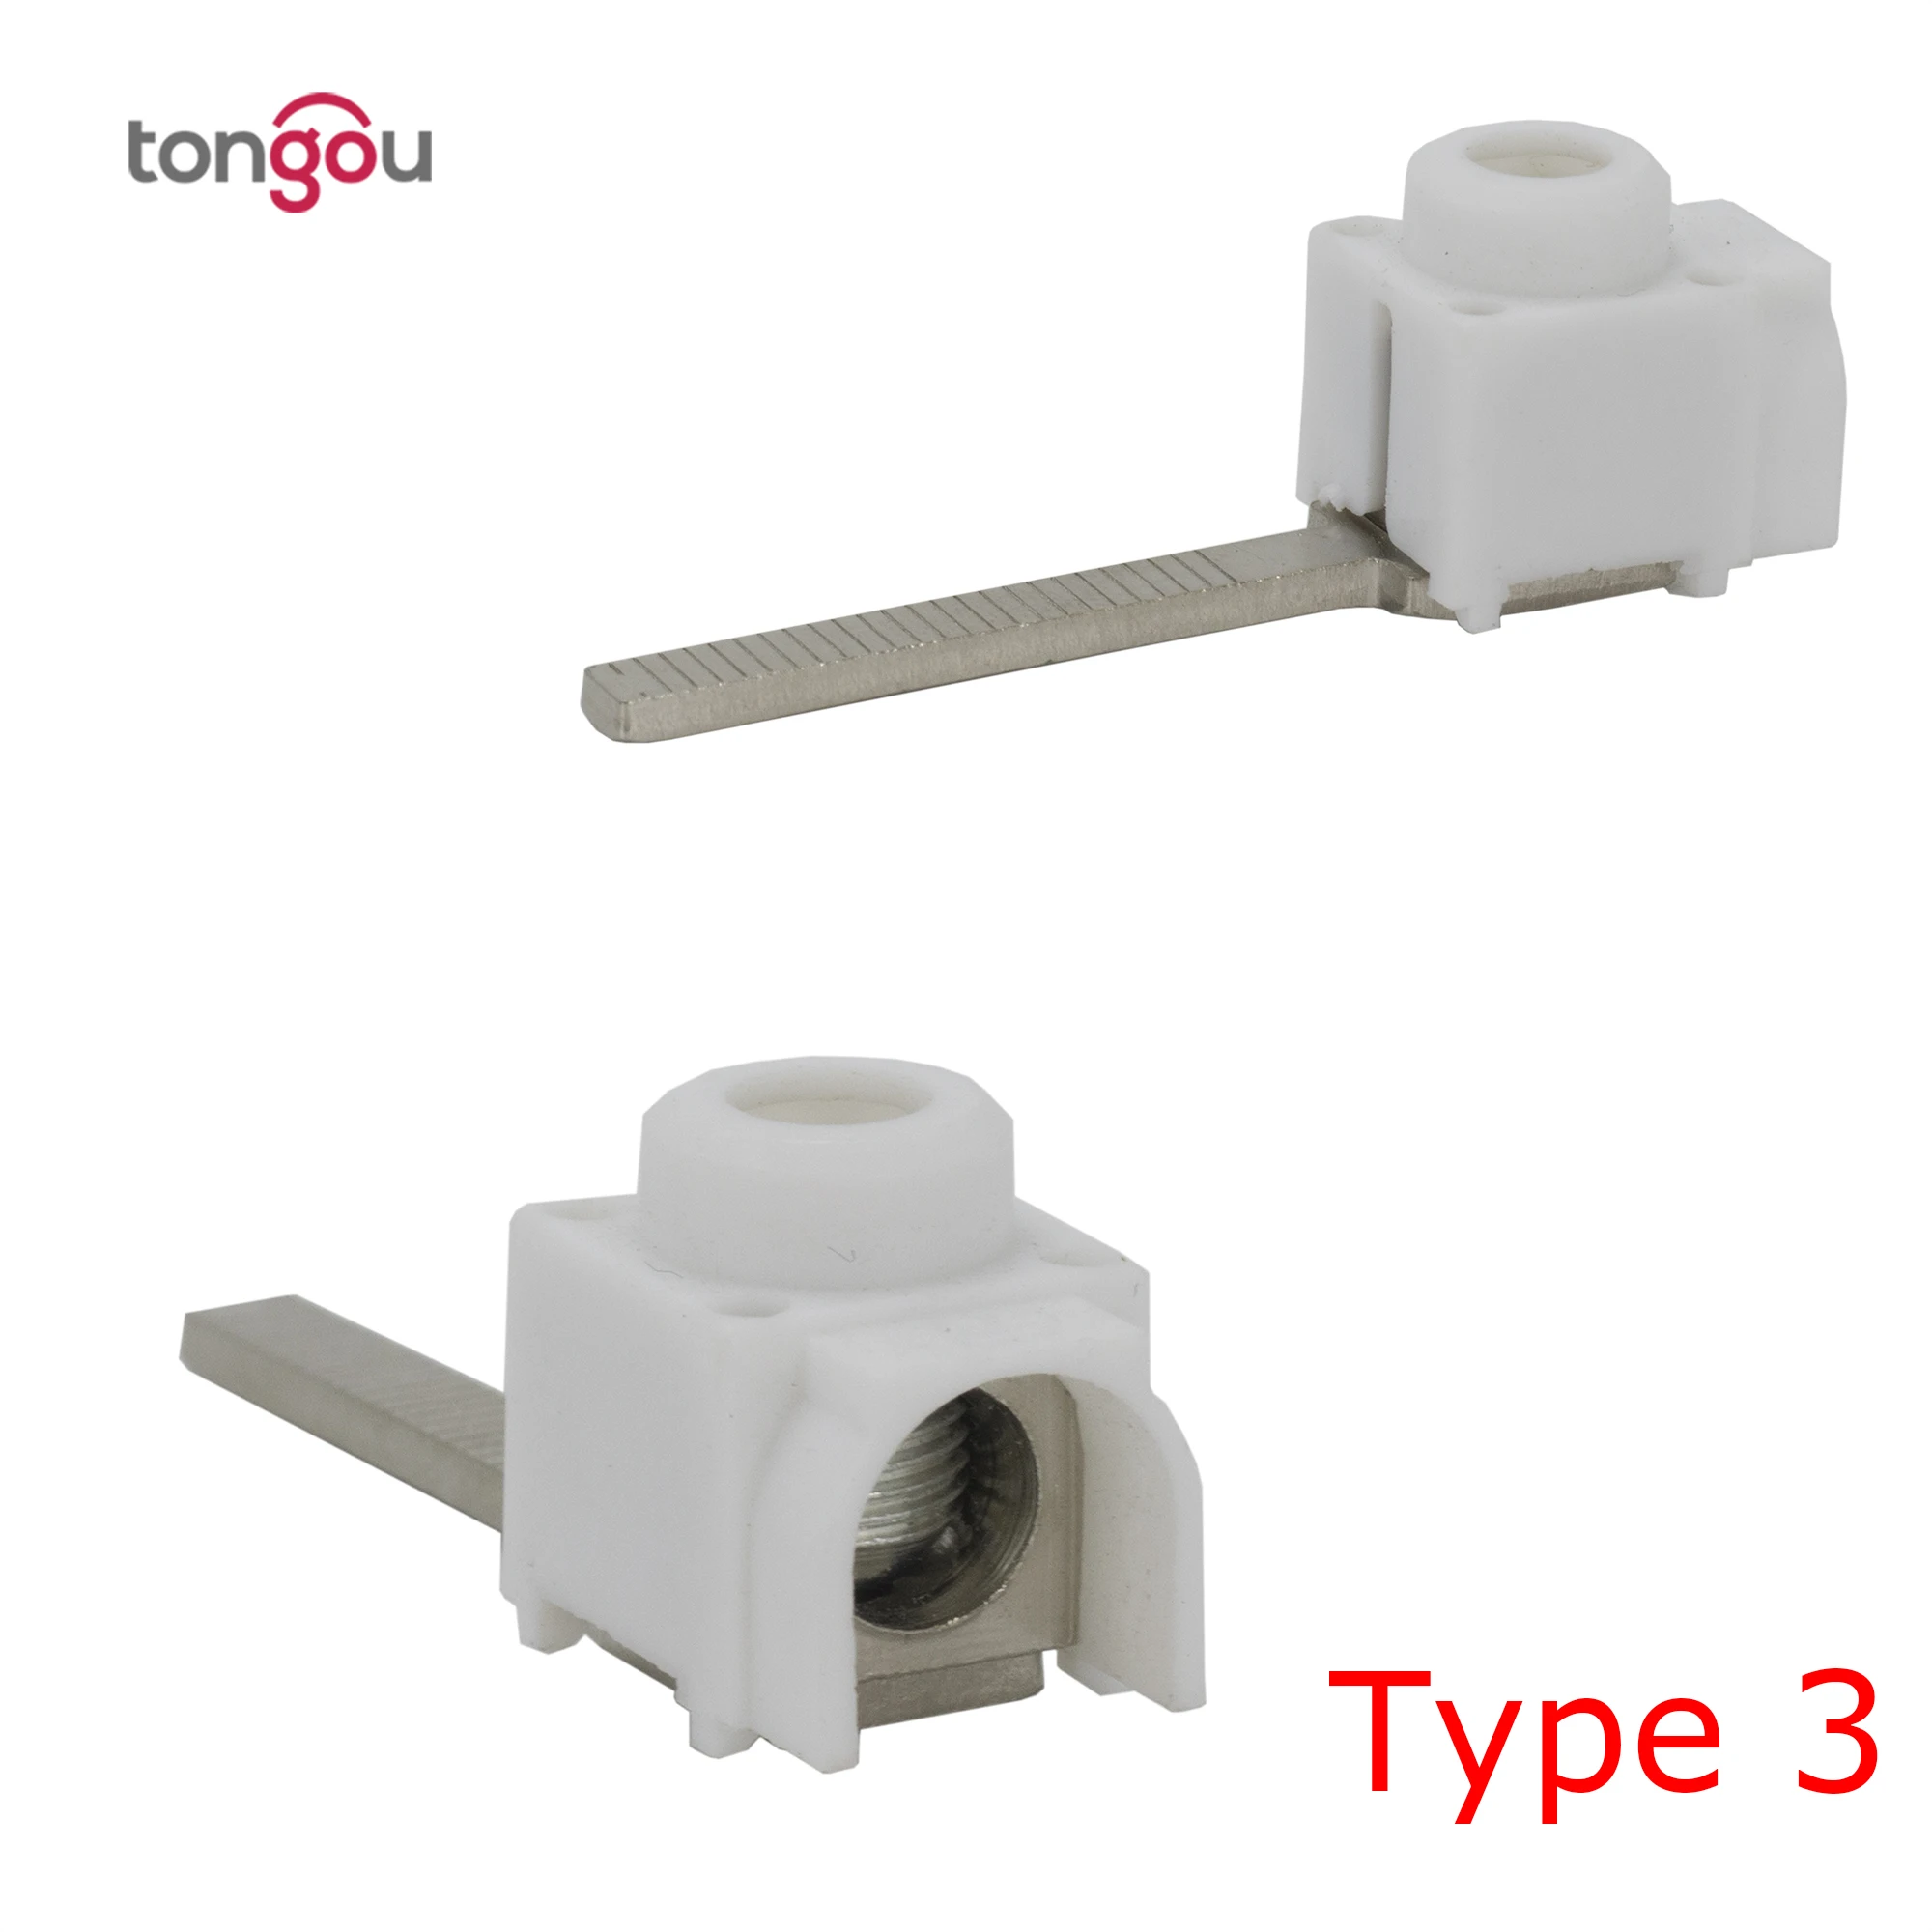 25 мм² клеммы для шин автоматический выключатель электрическая распределительная коробка провода разъем TONGOU